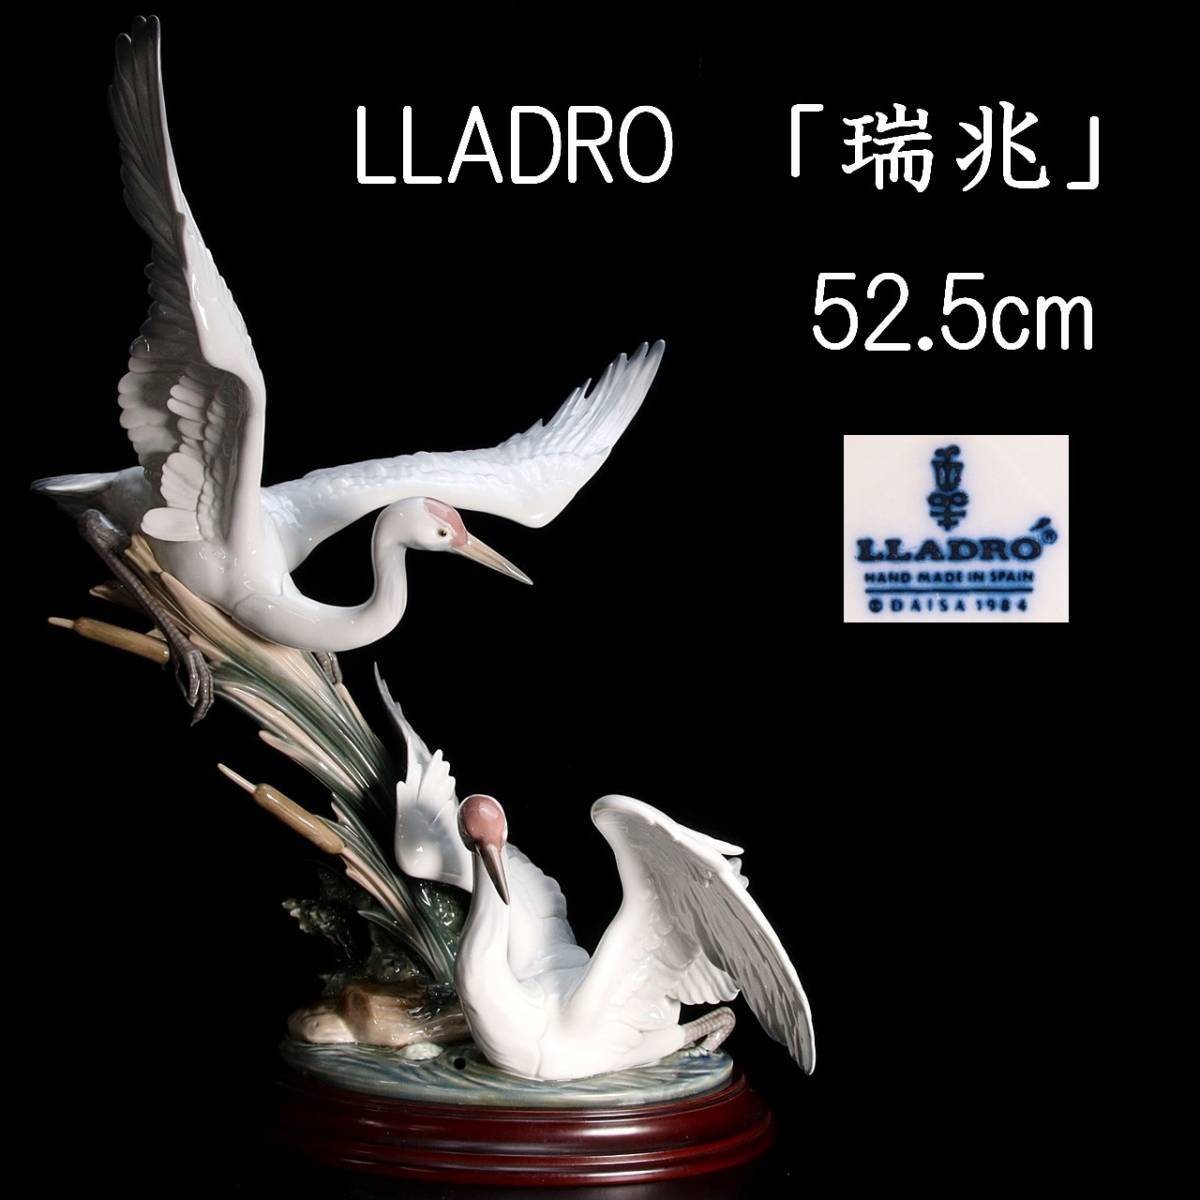 。◆錵◆3 百貨店購入 LLADRO リヤドロ 「瑞兆」 52.5cm ハイポーセリン 西洋美術 [Y200]VT/23.7/FM/(170)のサムネイル